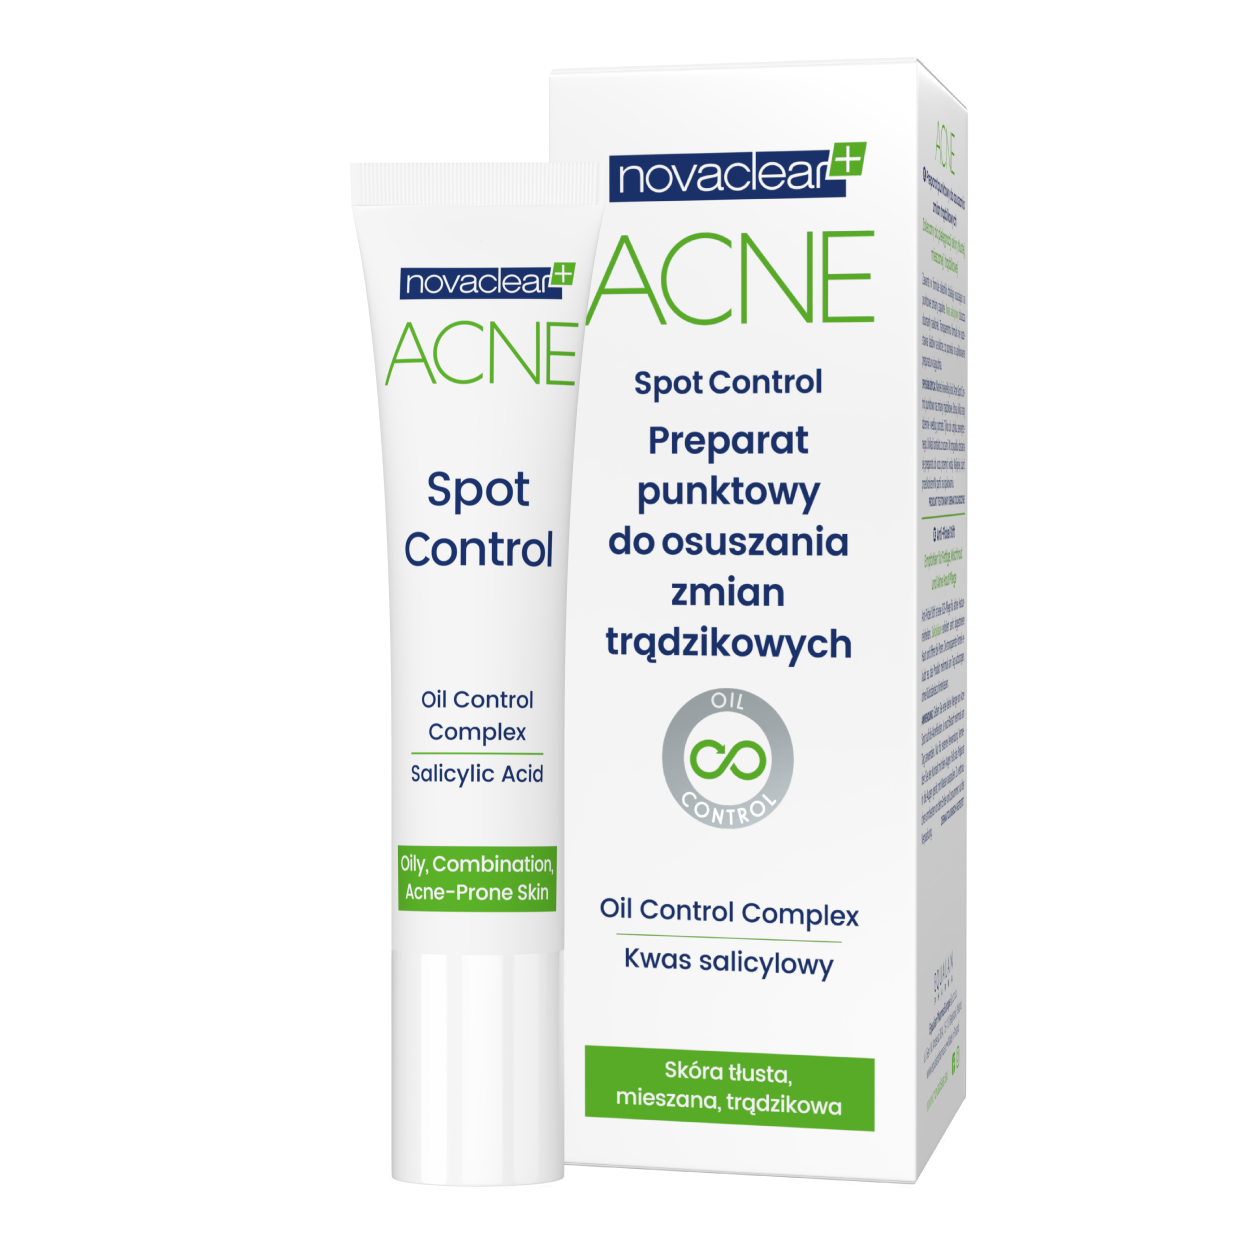 novaclear-acne-preparat-punktowy-do-osuszania-zmian-tradzikowych